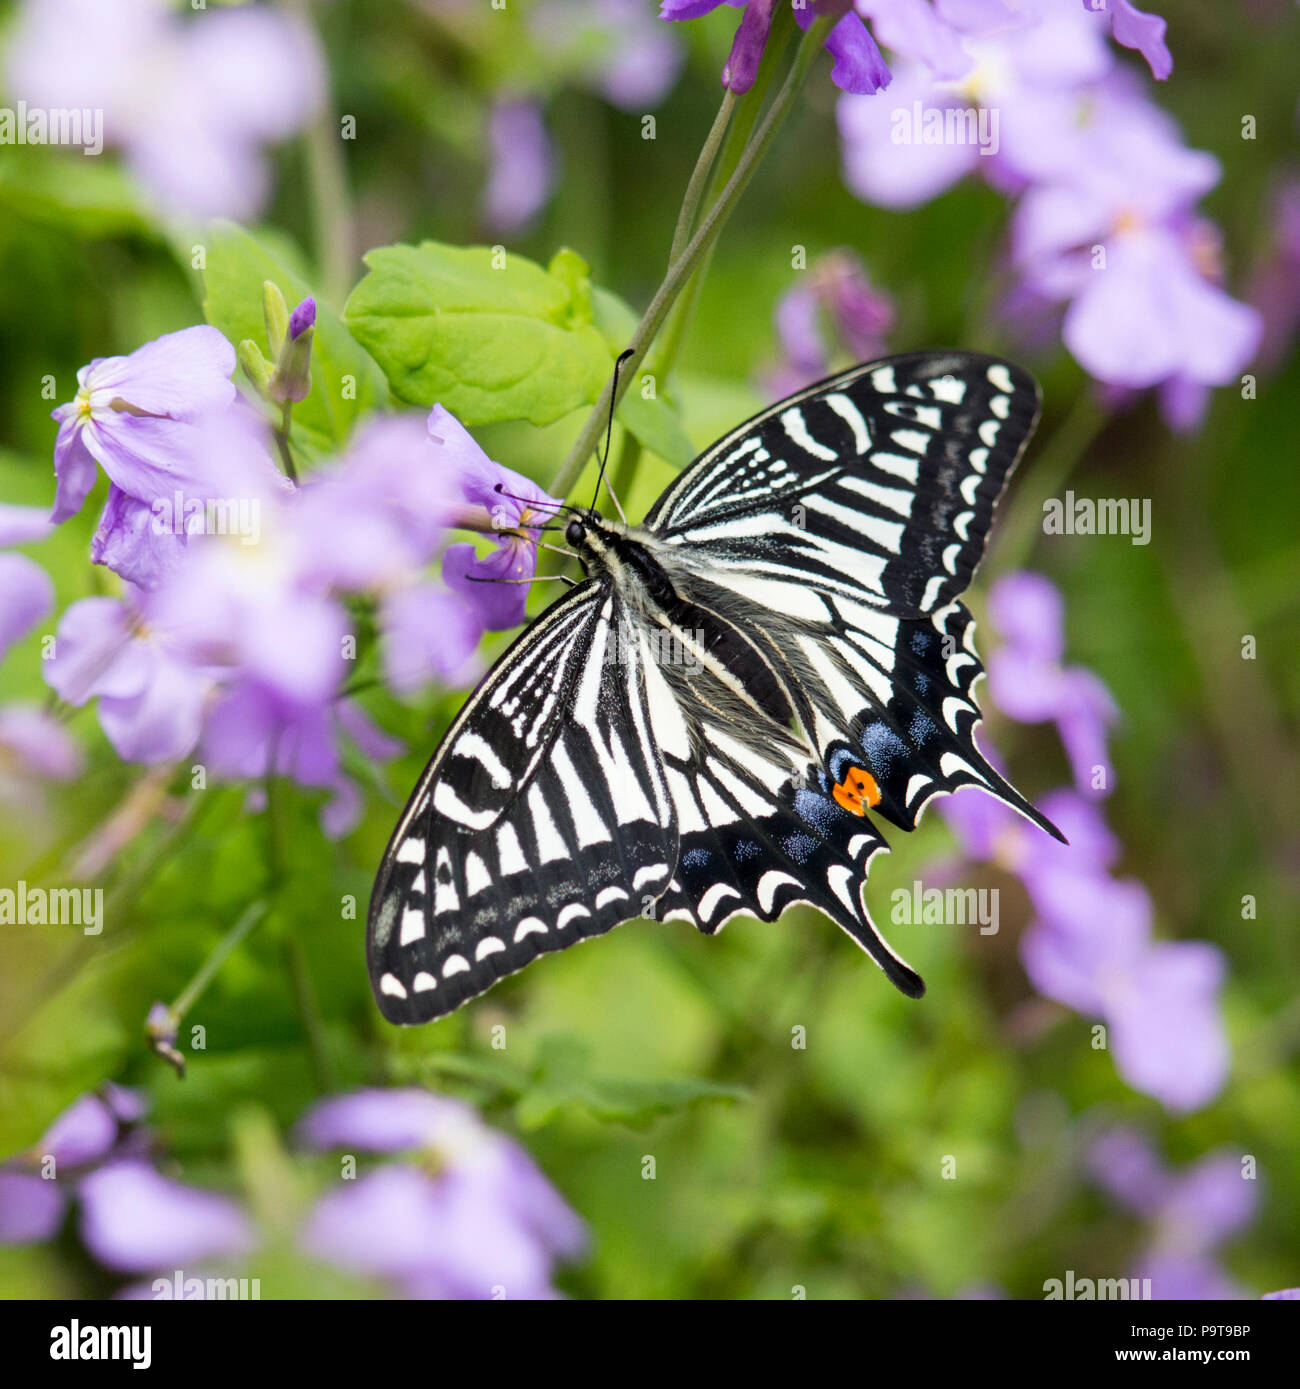 Feeding Frenzy - Asian Swallowtail butterfly est occupé à se nourrir après les orages au cours de l'île de XiaoYangshan Banque D'Images